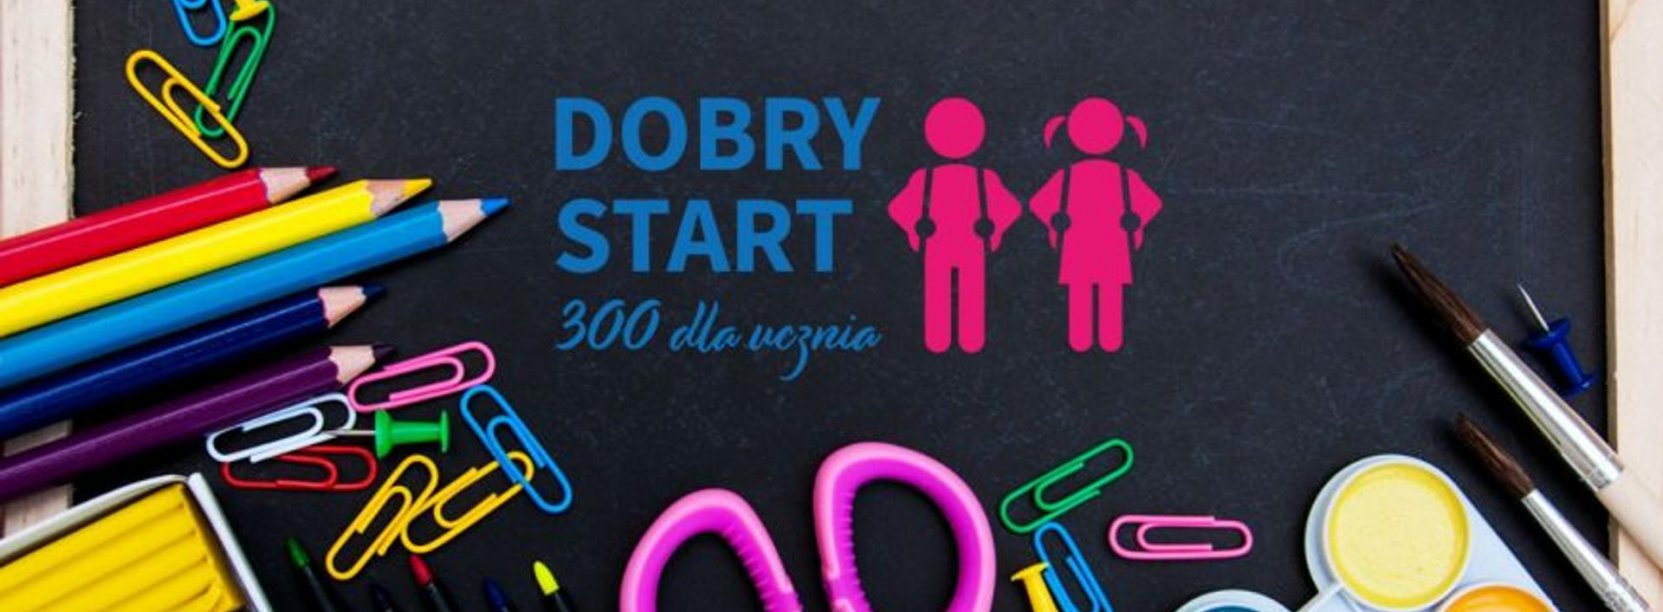 Kolorowe przybory szkolne, w tle tablica i napis: Dobry Start 300 dla ucznia"